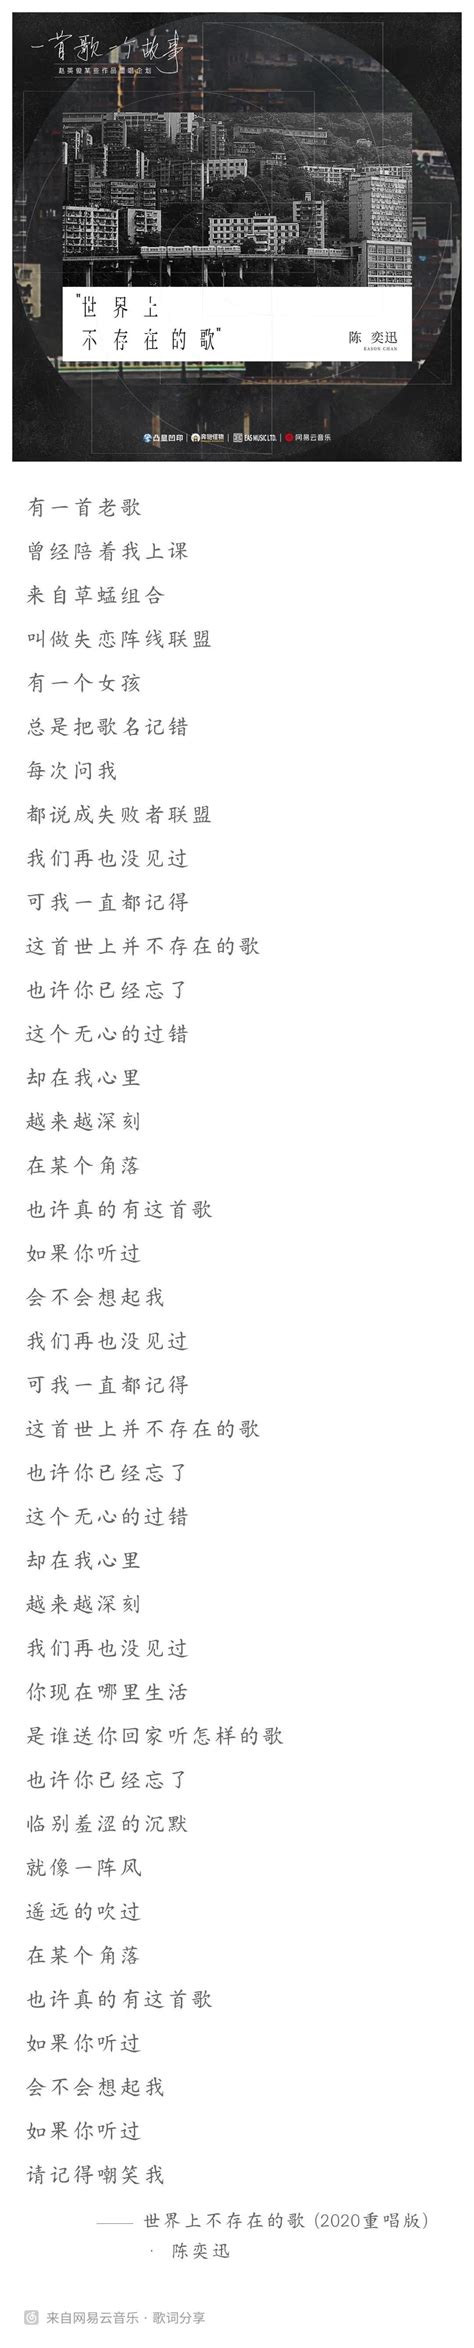 陈奕迅重新演绎单曲《世界上不存在的歌 (2020重唱版)》 - 神经迅息 - 神經研究所